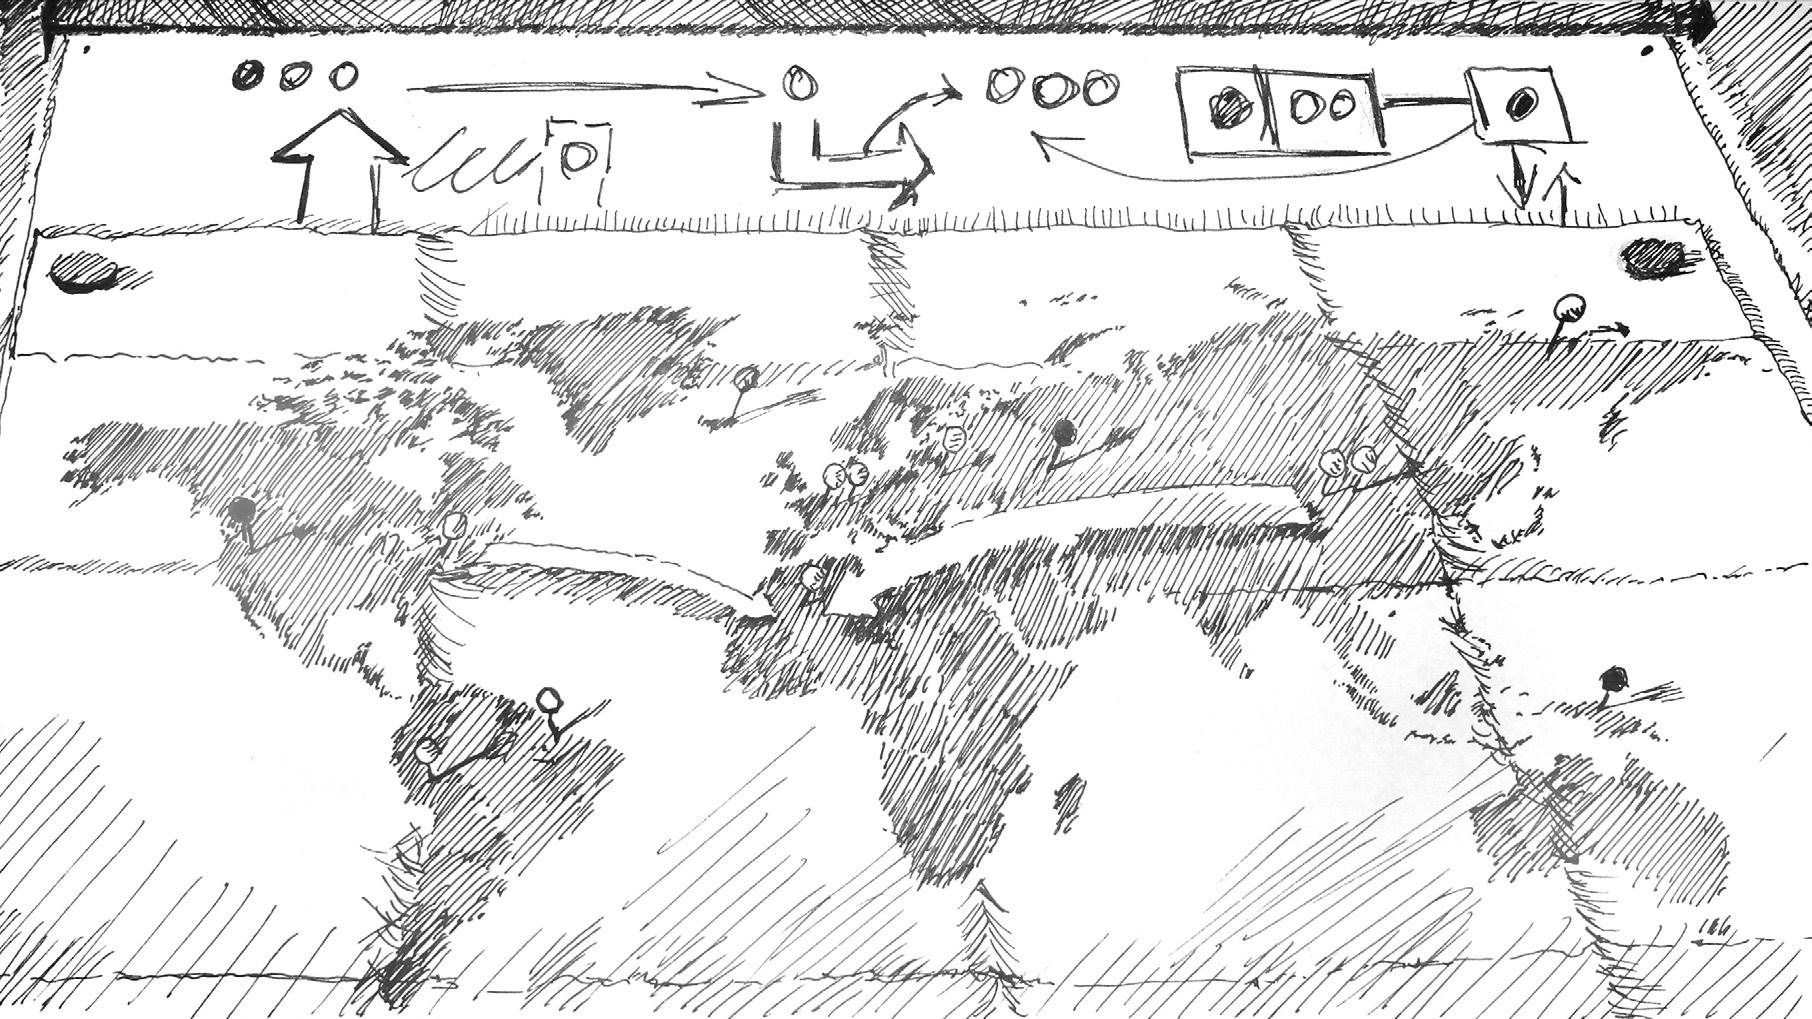 Eine Weltkarte zeigt mit Pfeilen und Stecknadeln mögliche Zusammenhänge auf.